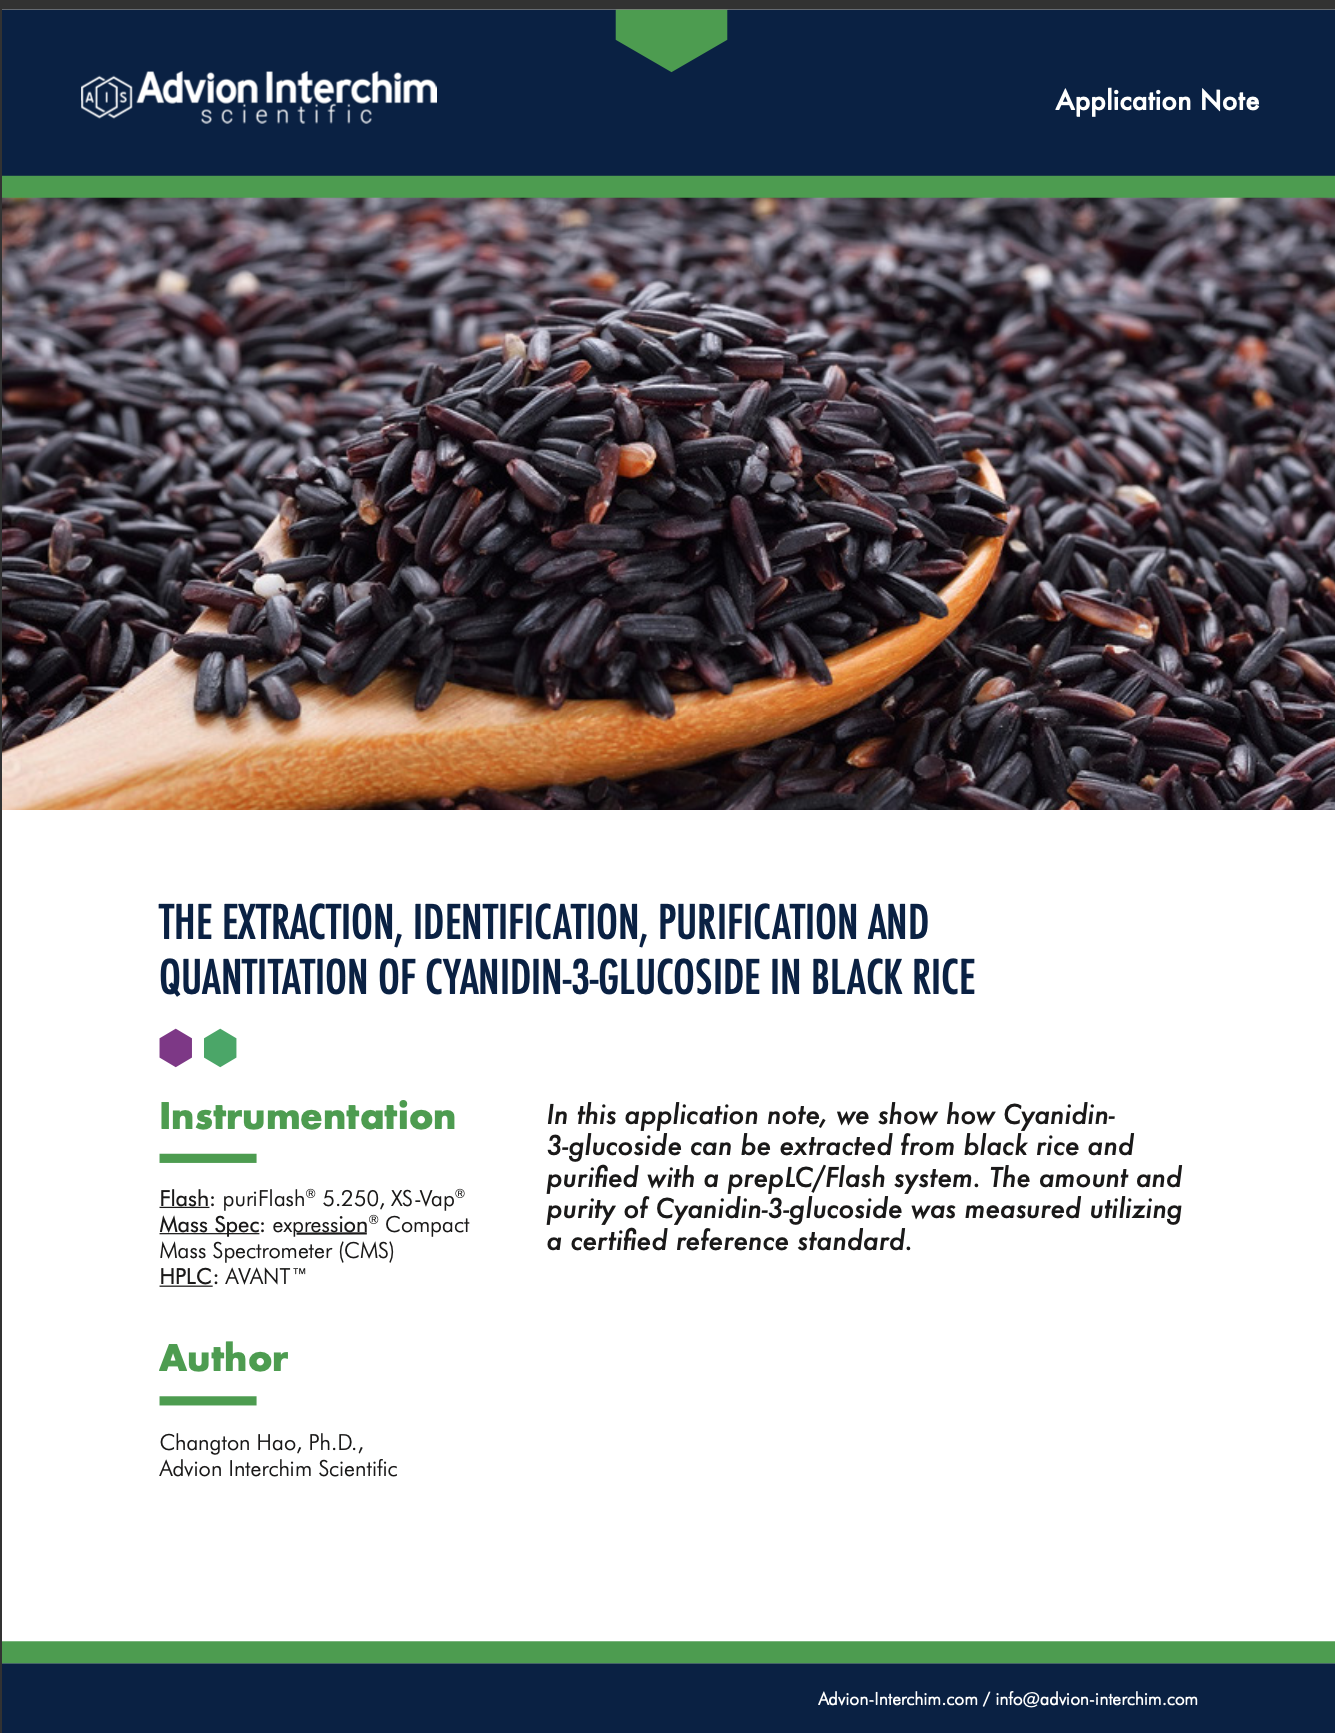 La extracción, identificación, purificación y cuantificación de cianidina-3-glucósido en arroz negro